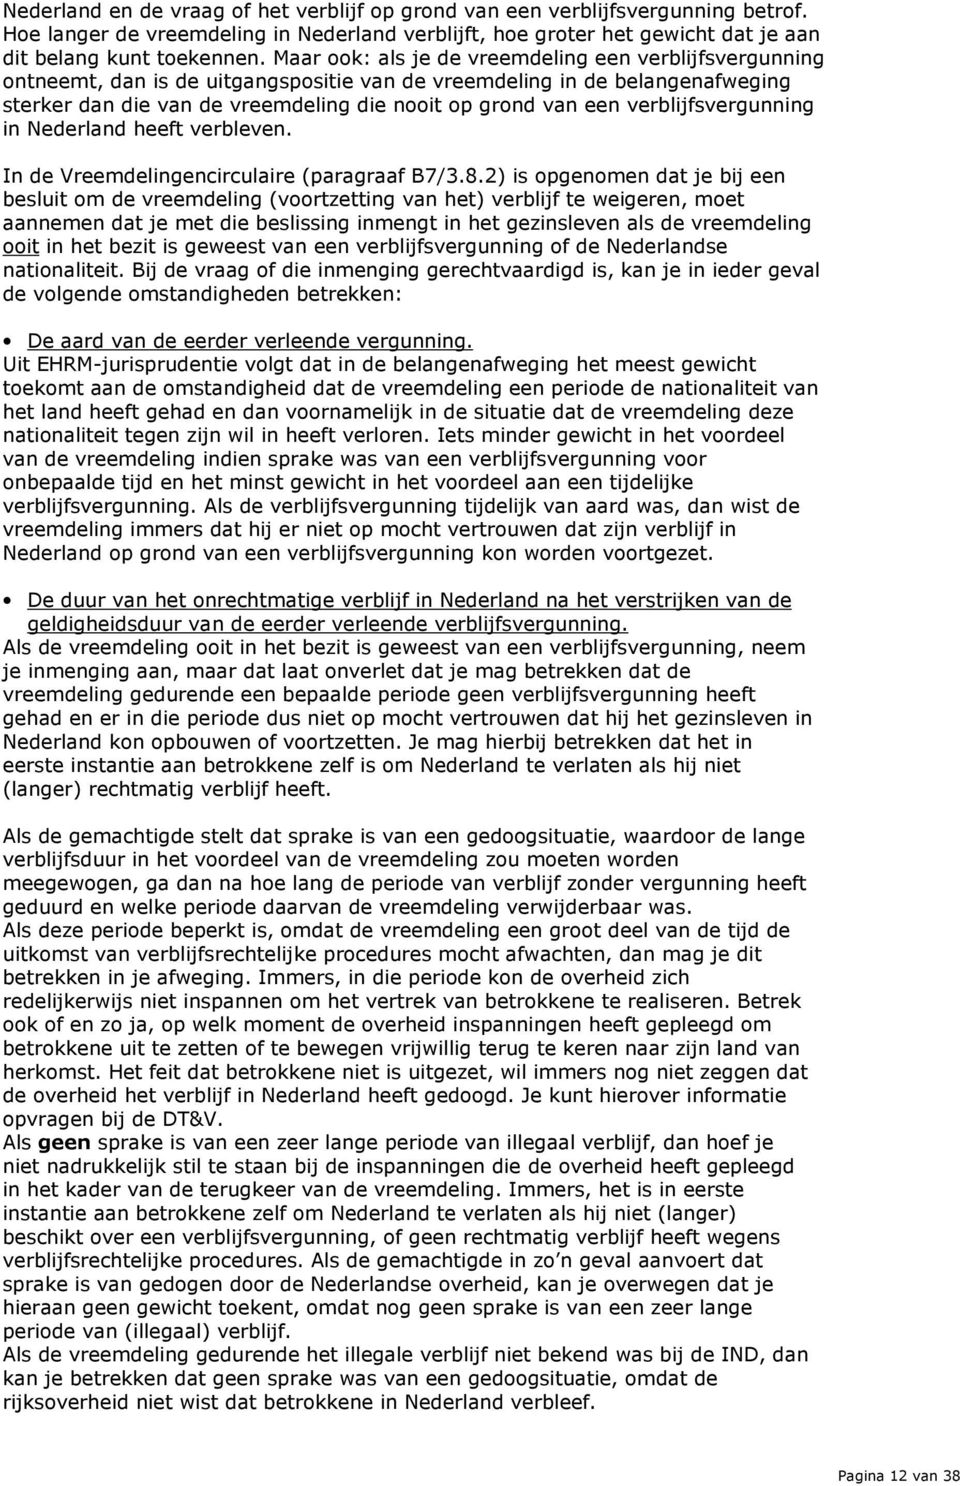 verblijfsvergunning in Nederland heeft verbleven. In de Vreemdelingencirculaire (paragraaf B7/3.8.